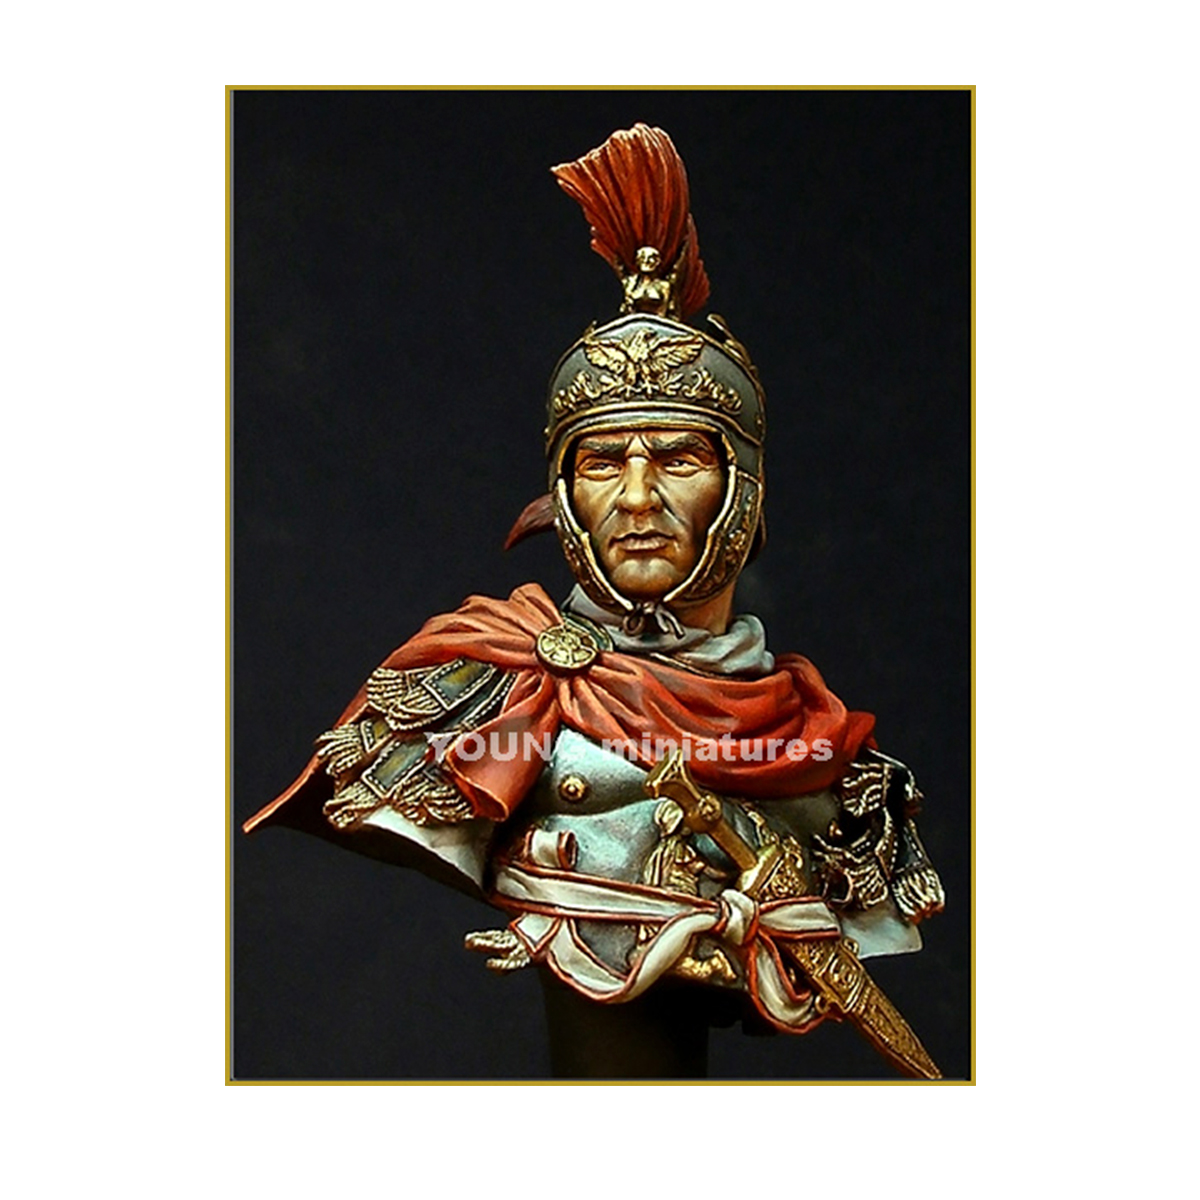 ROMAN CAVALRY OFFICER 180 B.C.